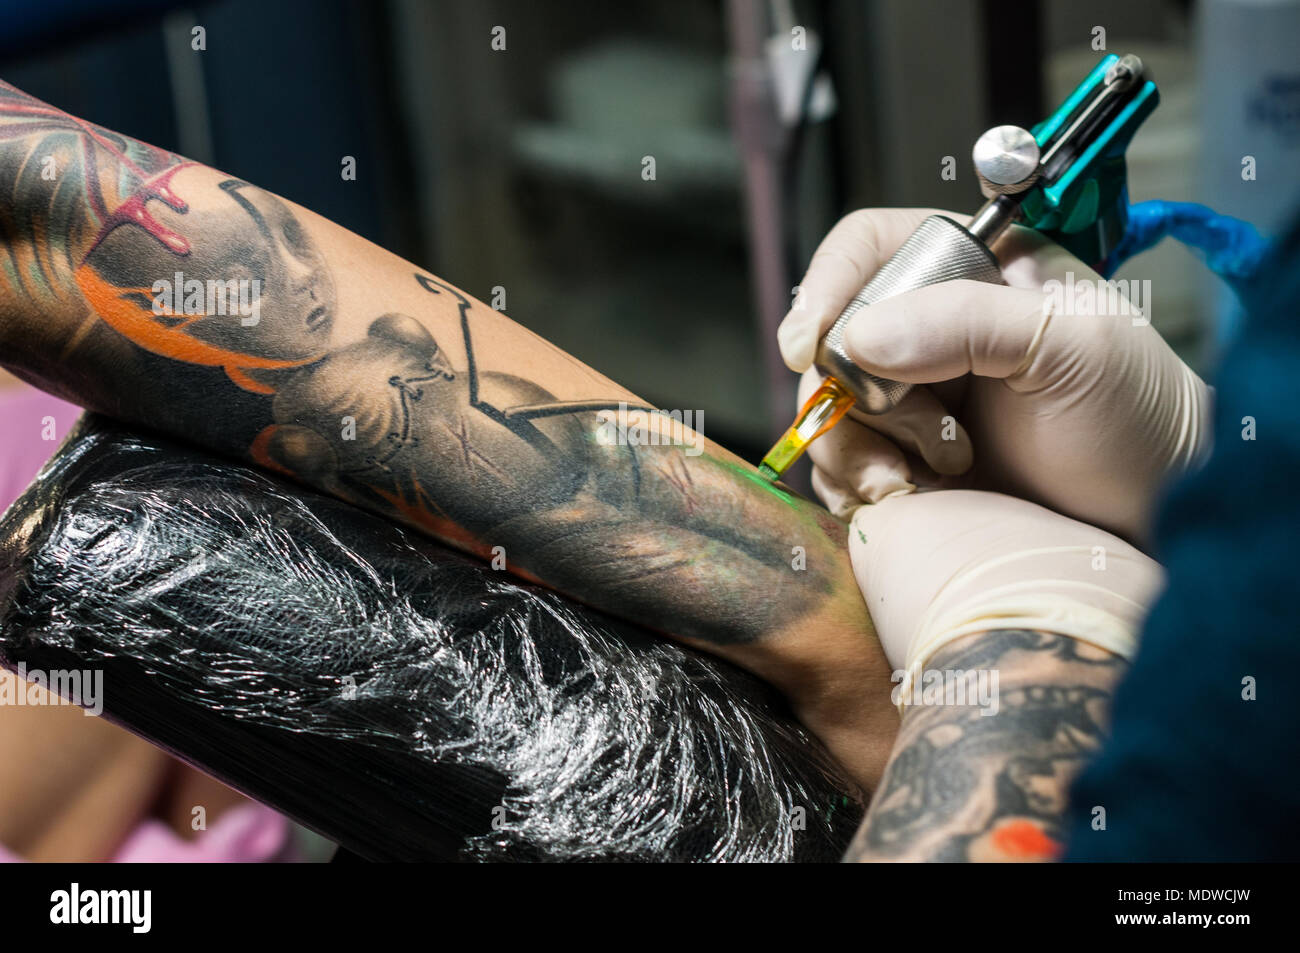 denver tattoo artist kayden digiovanni best top backpiece   Flickr